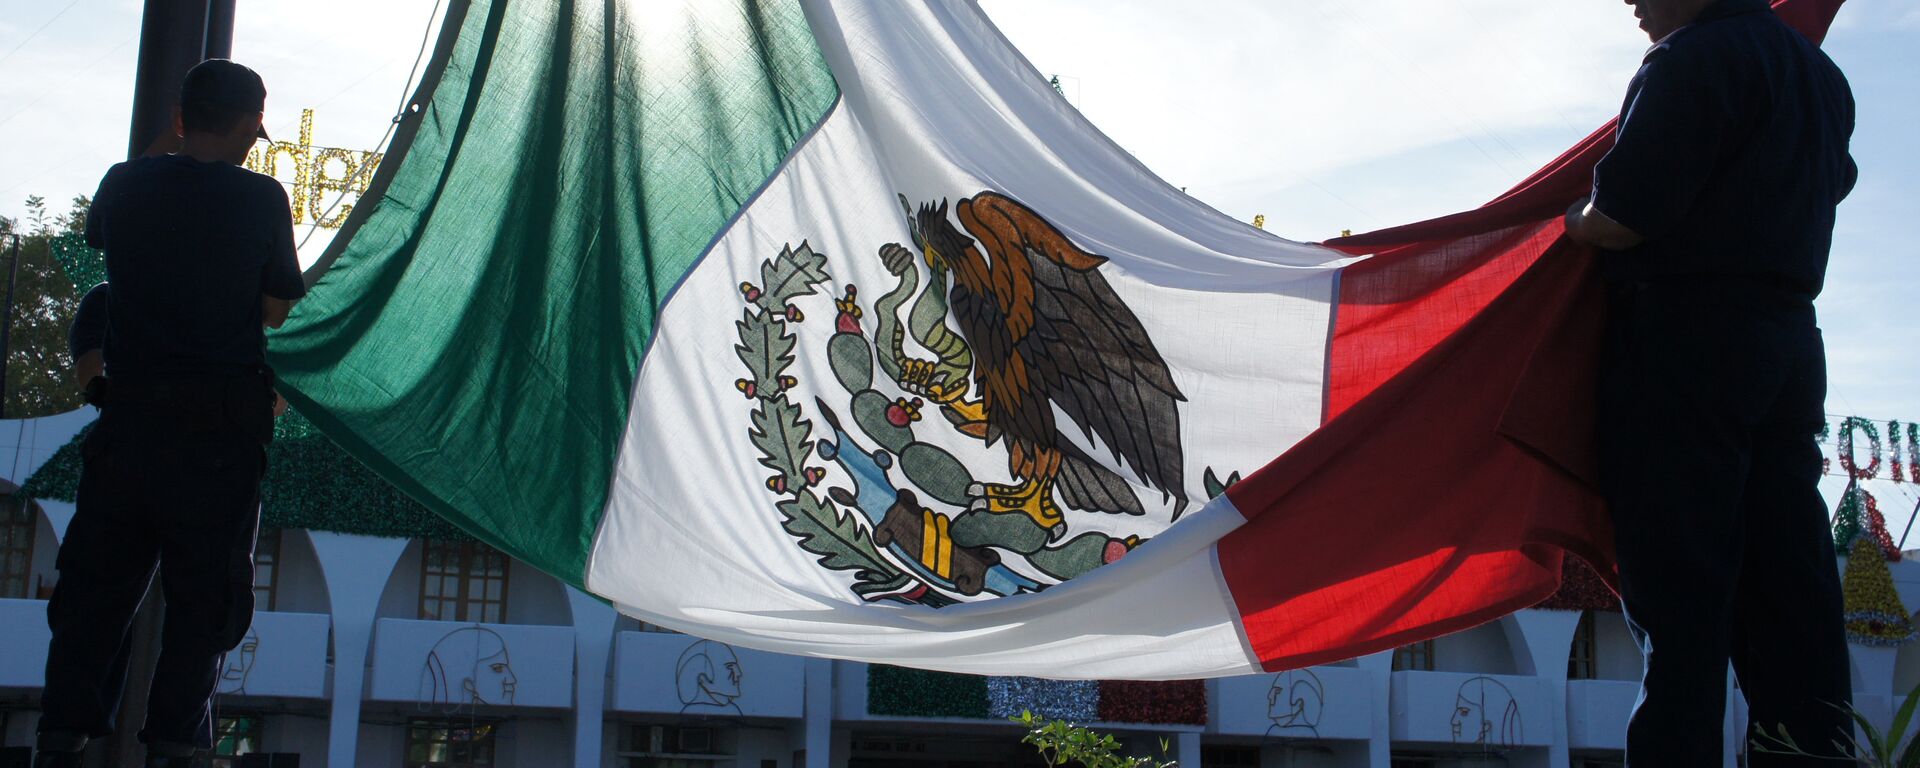 La bandera de México - Sputnik Mundo, 1920, 08.08.2019